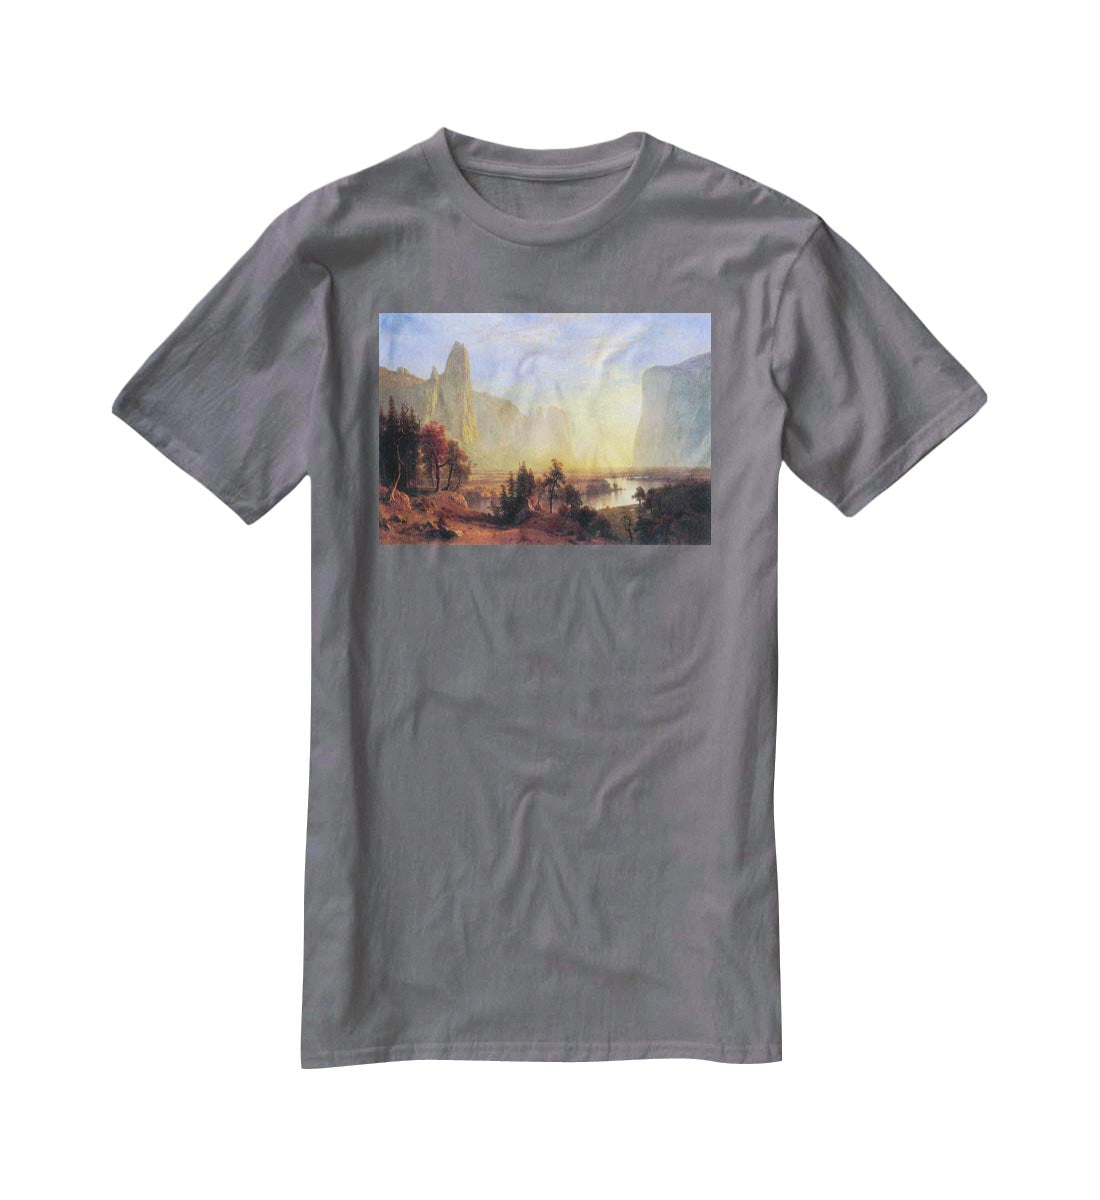 Yosemite Valley by Bierstadt T-Shirt - Canvas Art Rocks - 3